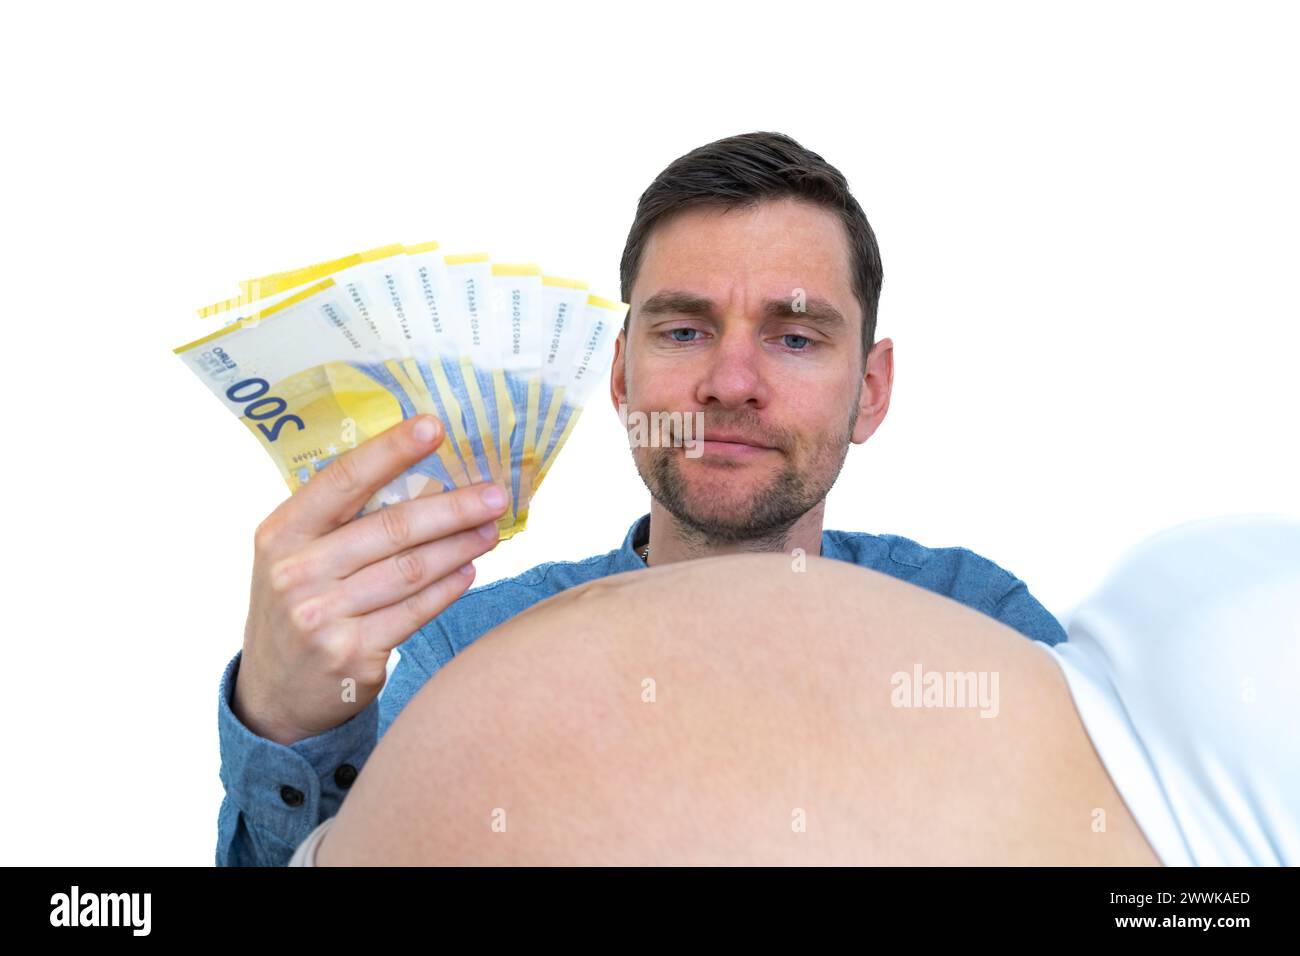 Beschreibung: Werdender Vater mit Banknoten in der Hand betrachtet nachdenklich die Schwangere. Letzter Schwangerschaftsmonat - Woche 39. Weißer Hintergrund. Br Stockfoto